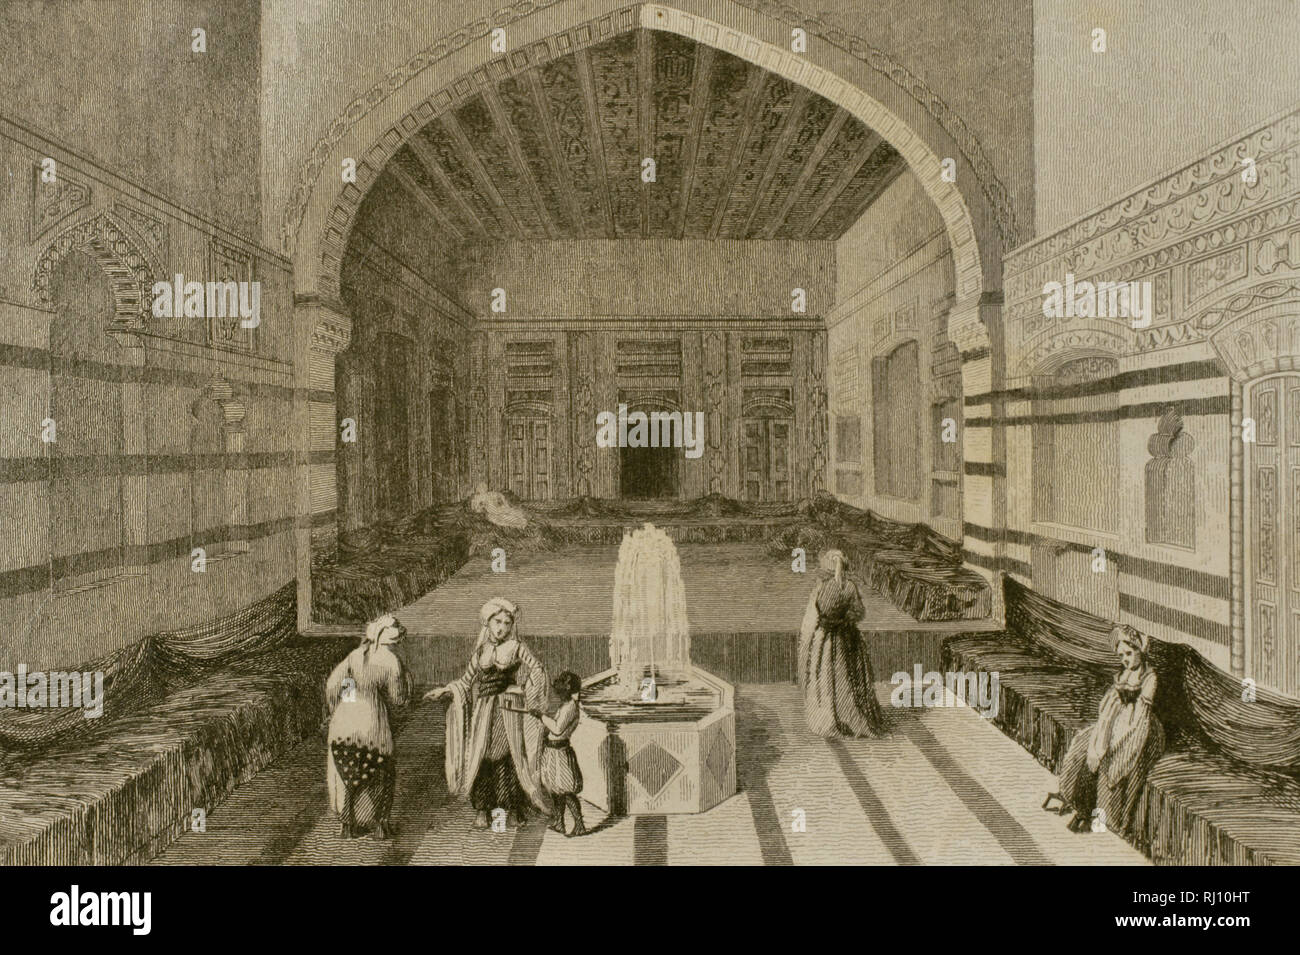 La Syrie. Damas. L'intérieur d'un palais. La gravure. Panorama universel. Histoire de France, 1851. Banque D'Images